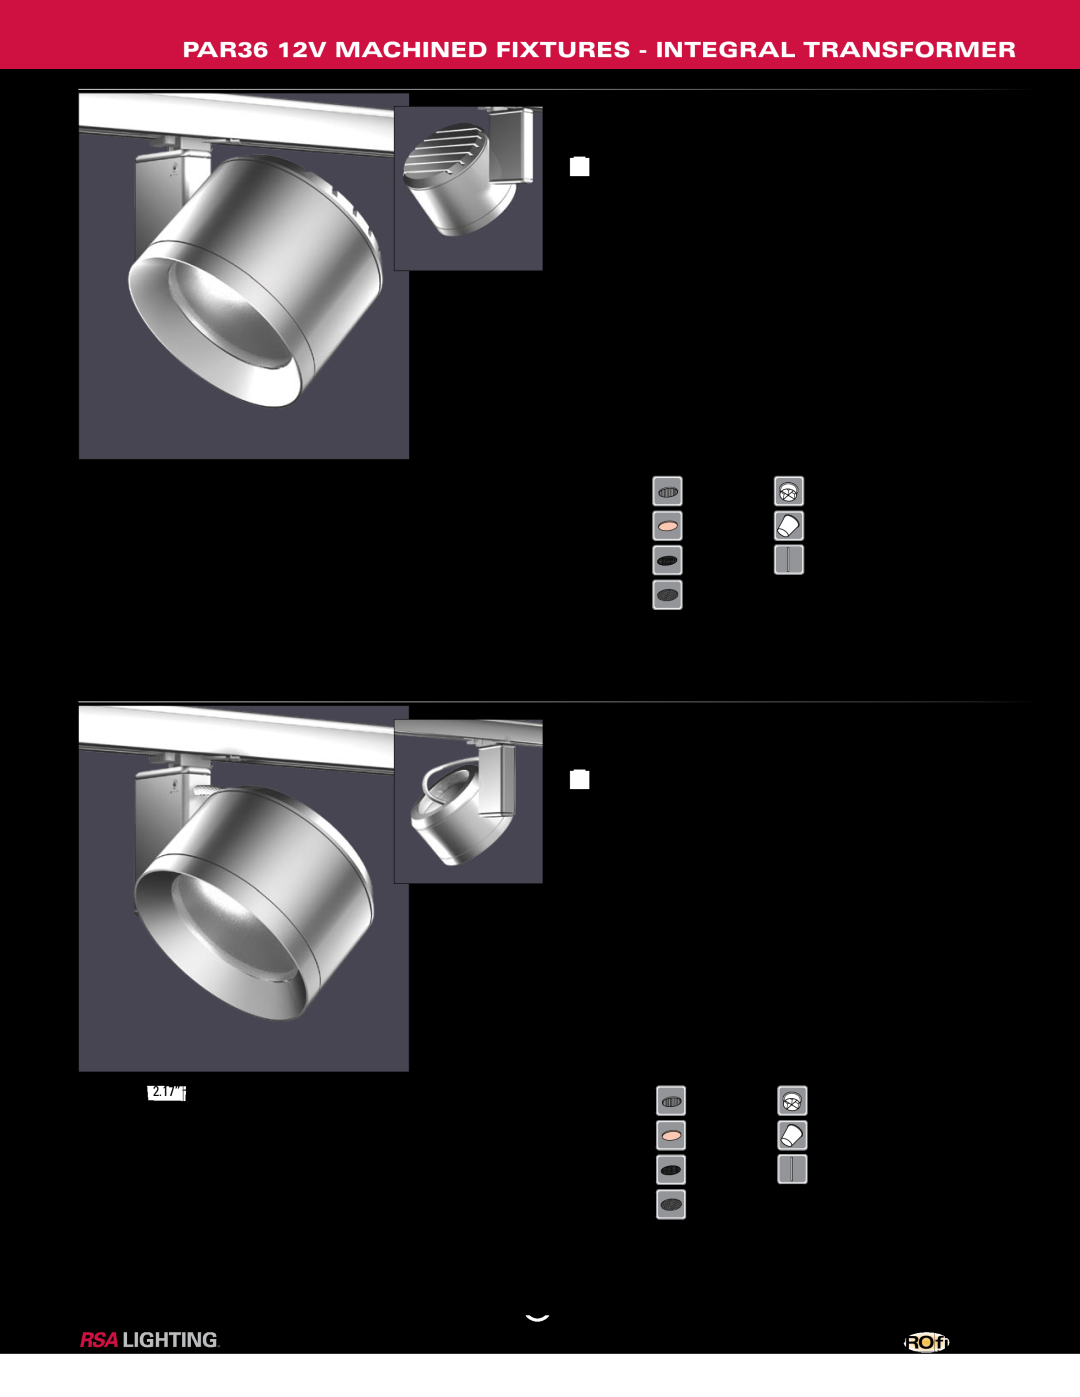 Profile Machined Aluminum Fixtures manual PM615ob-50-AL-120, PM615obi-50-AL-120, 370º horiz. x 270º vert. adjustment 